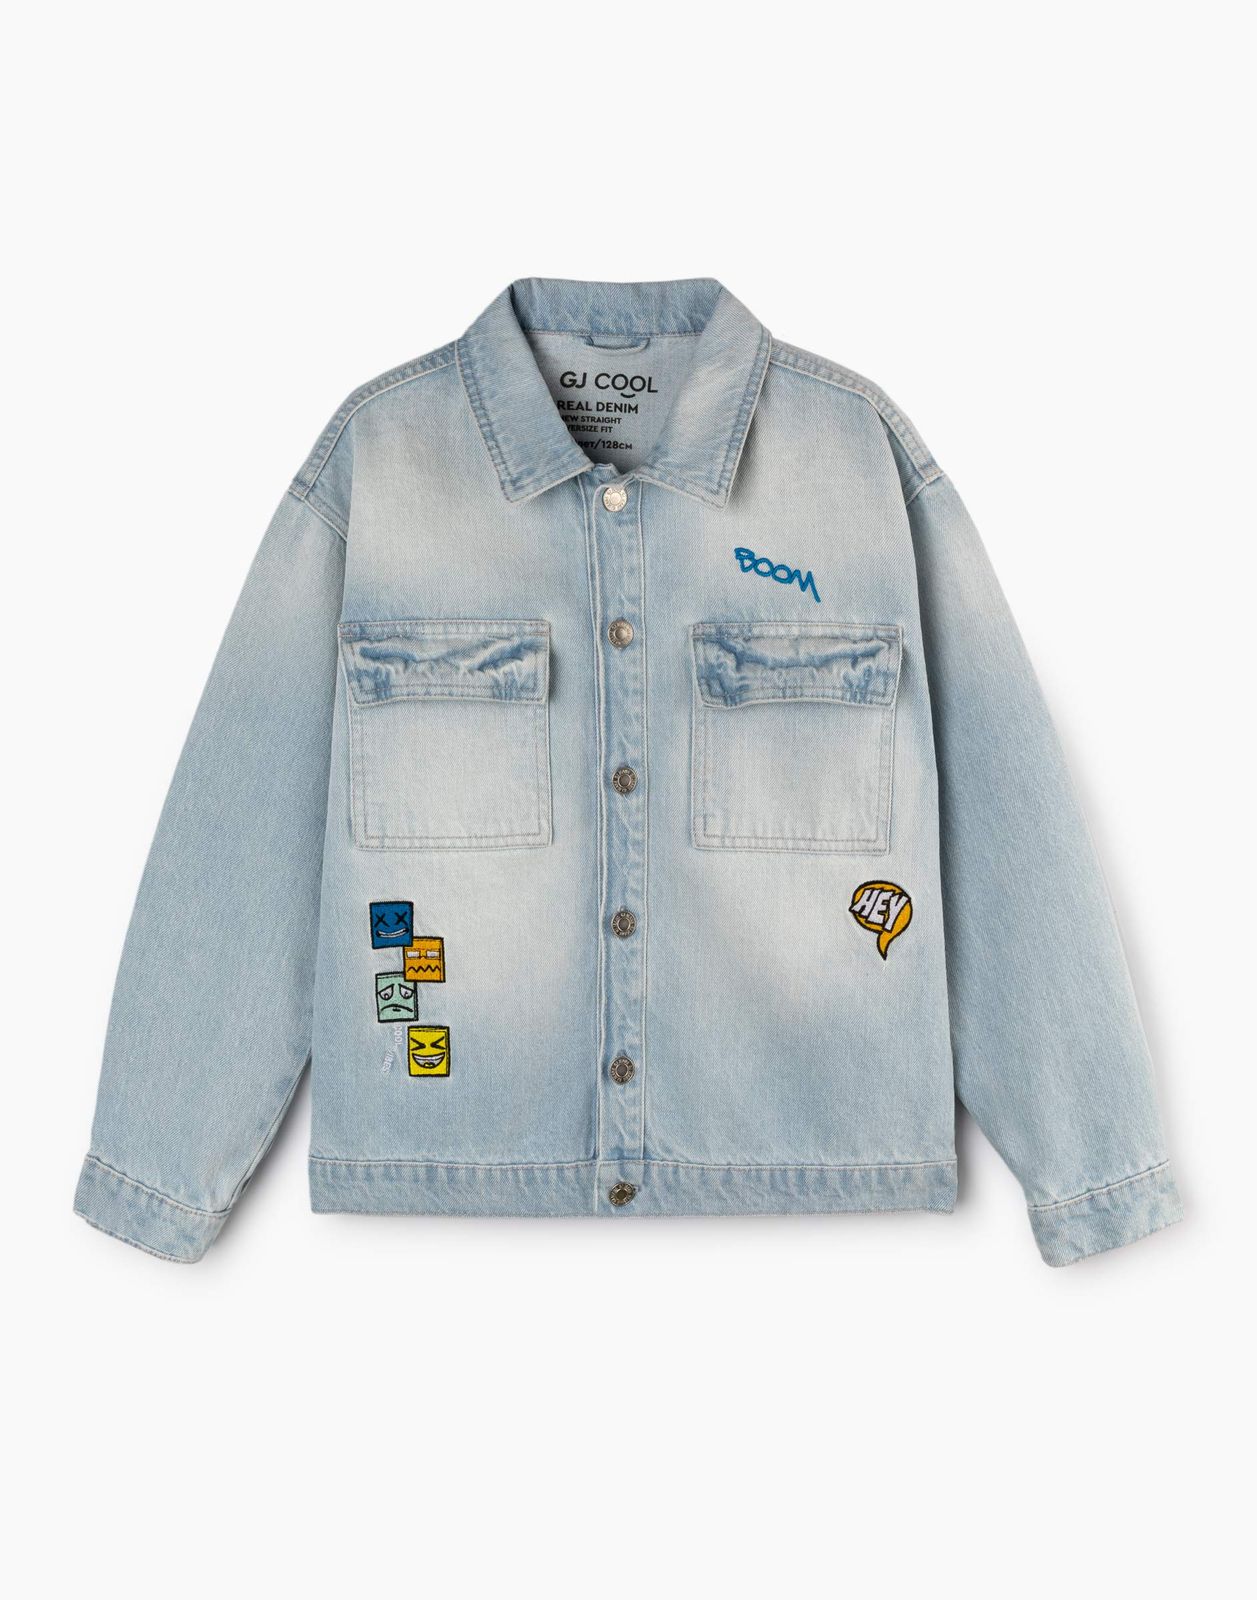 Джинсовый жакет (куртка) для мальчика Gloria Jeans BJC002603 синий /медиум-лайт/ 4-6л/116